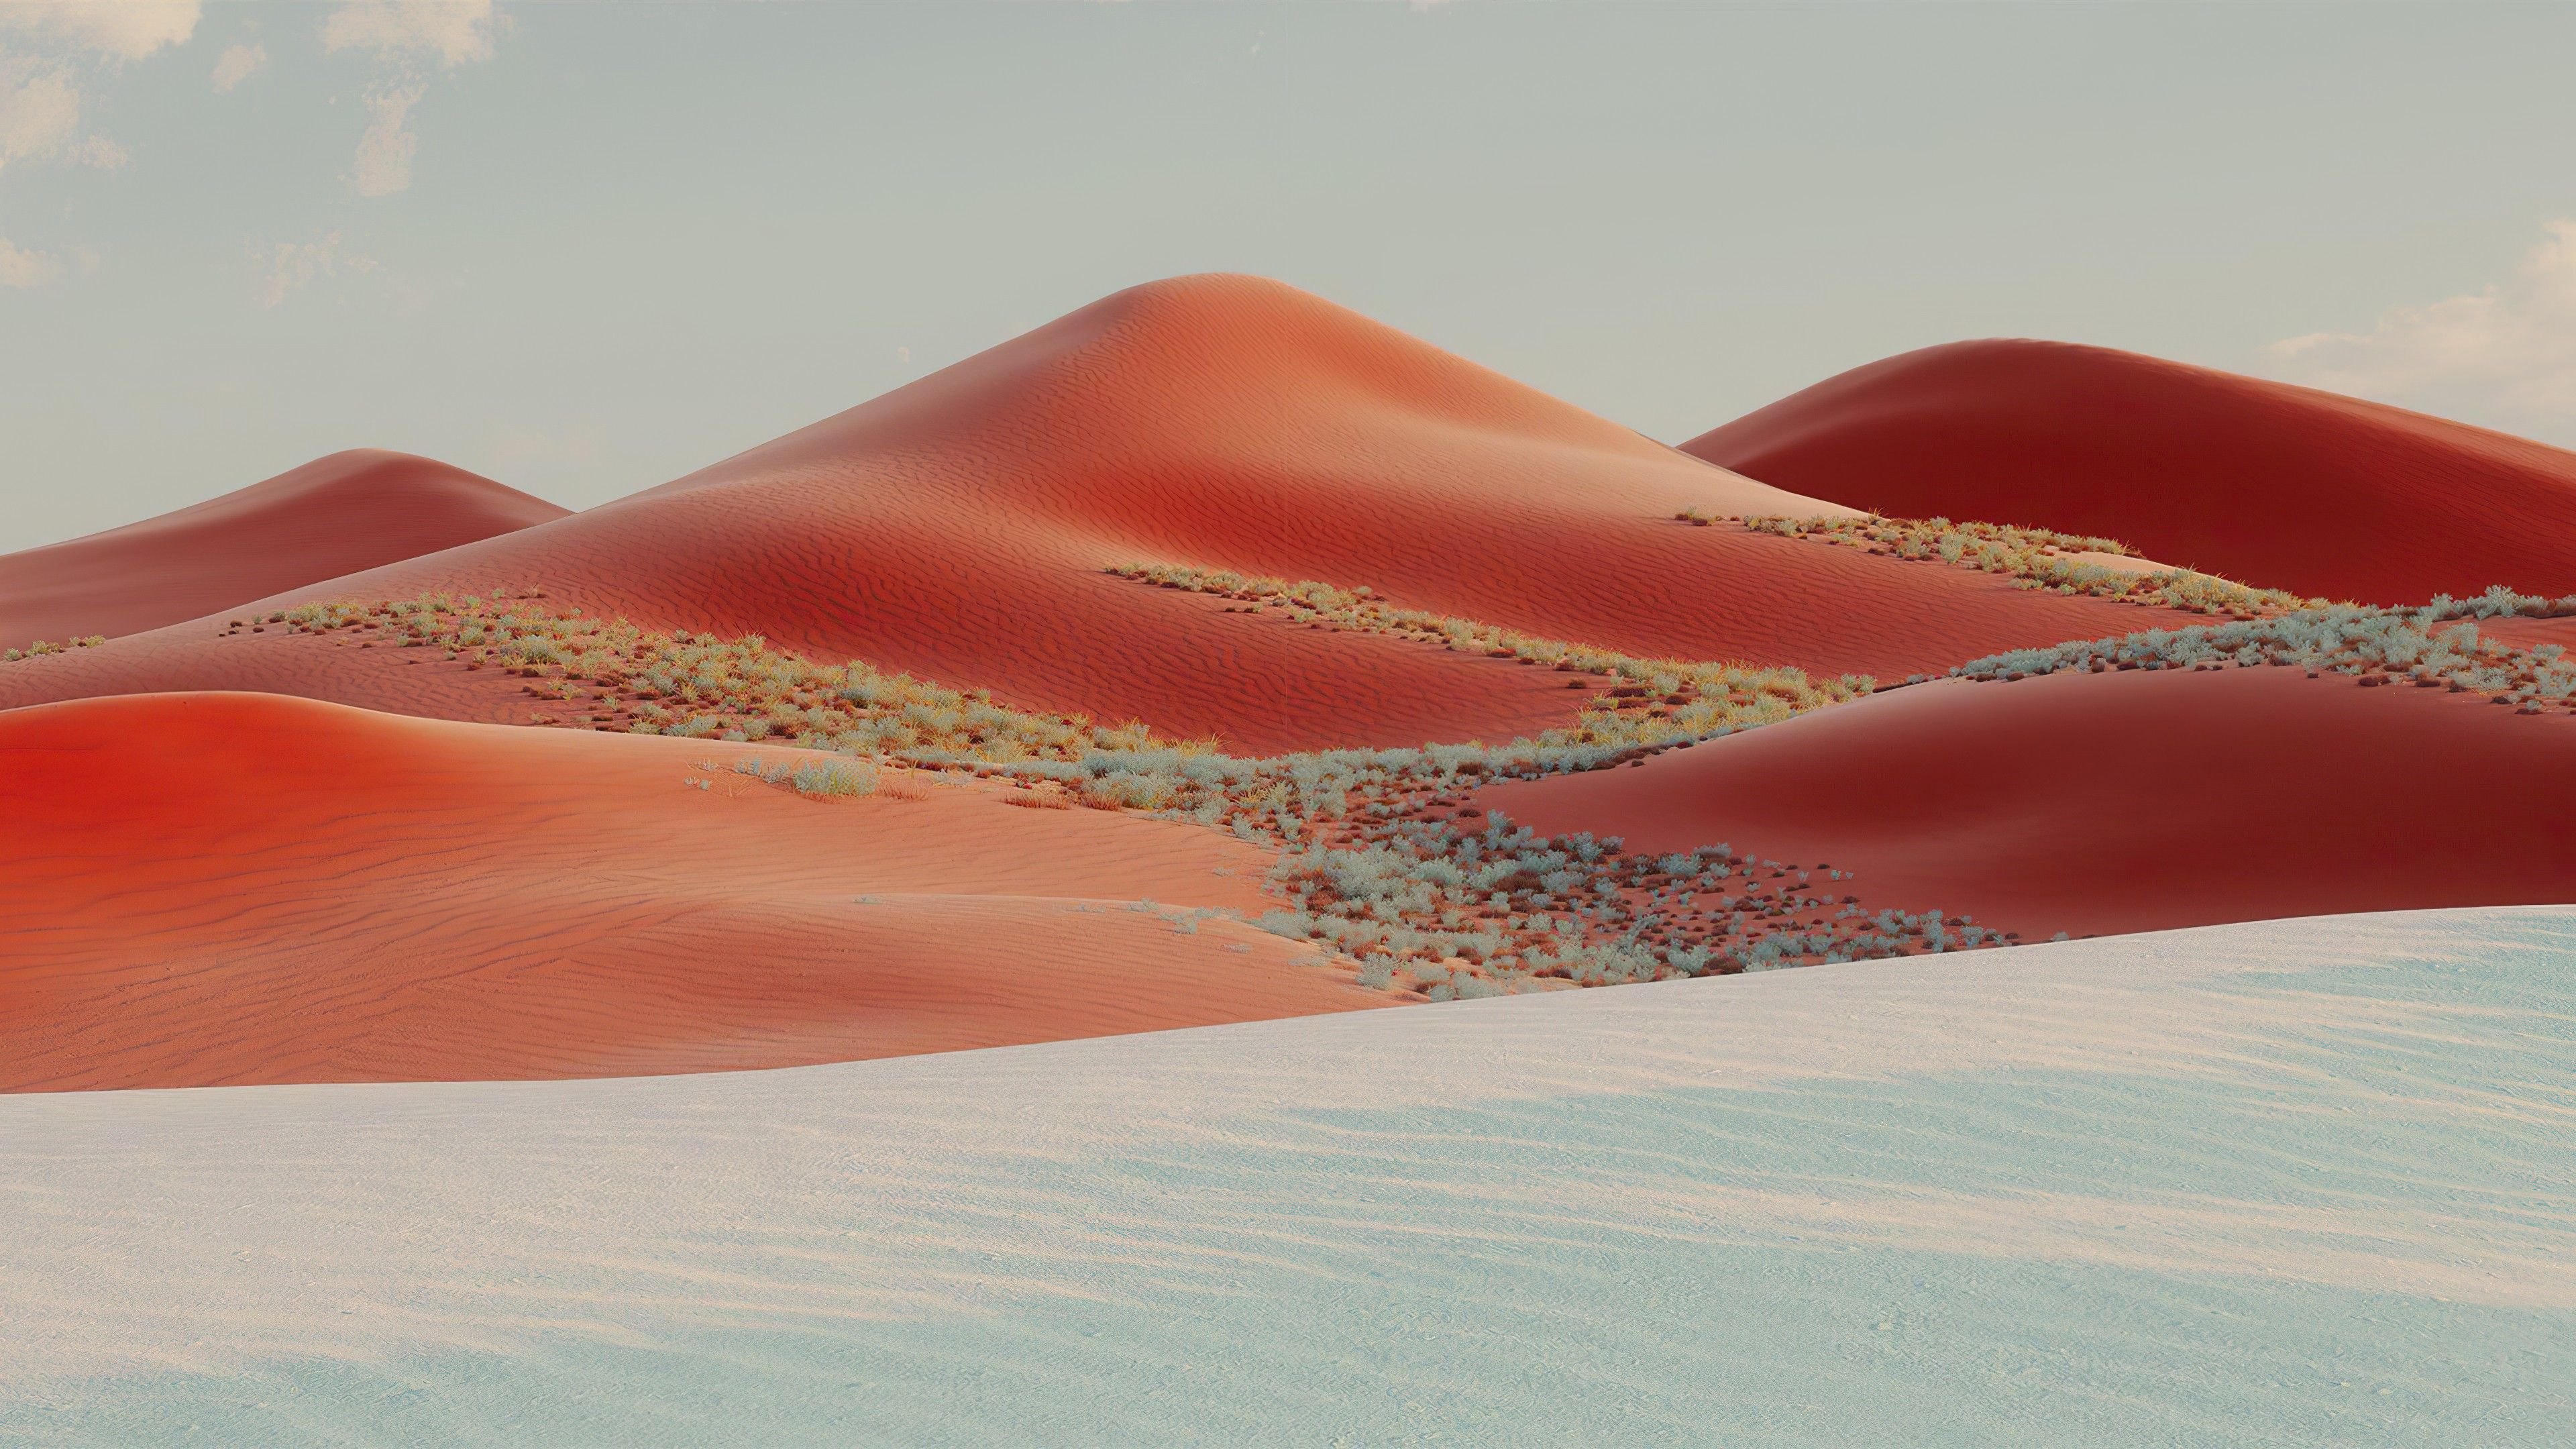 Sand Dunes 4K Wallpaper, Desert, Landscape, Evening, Windows 10X, Microsoft Surface, Nature